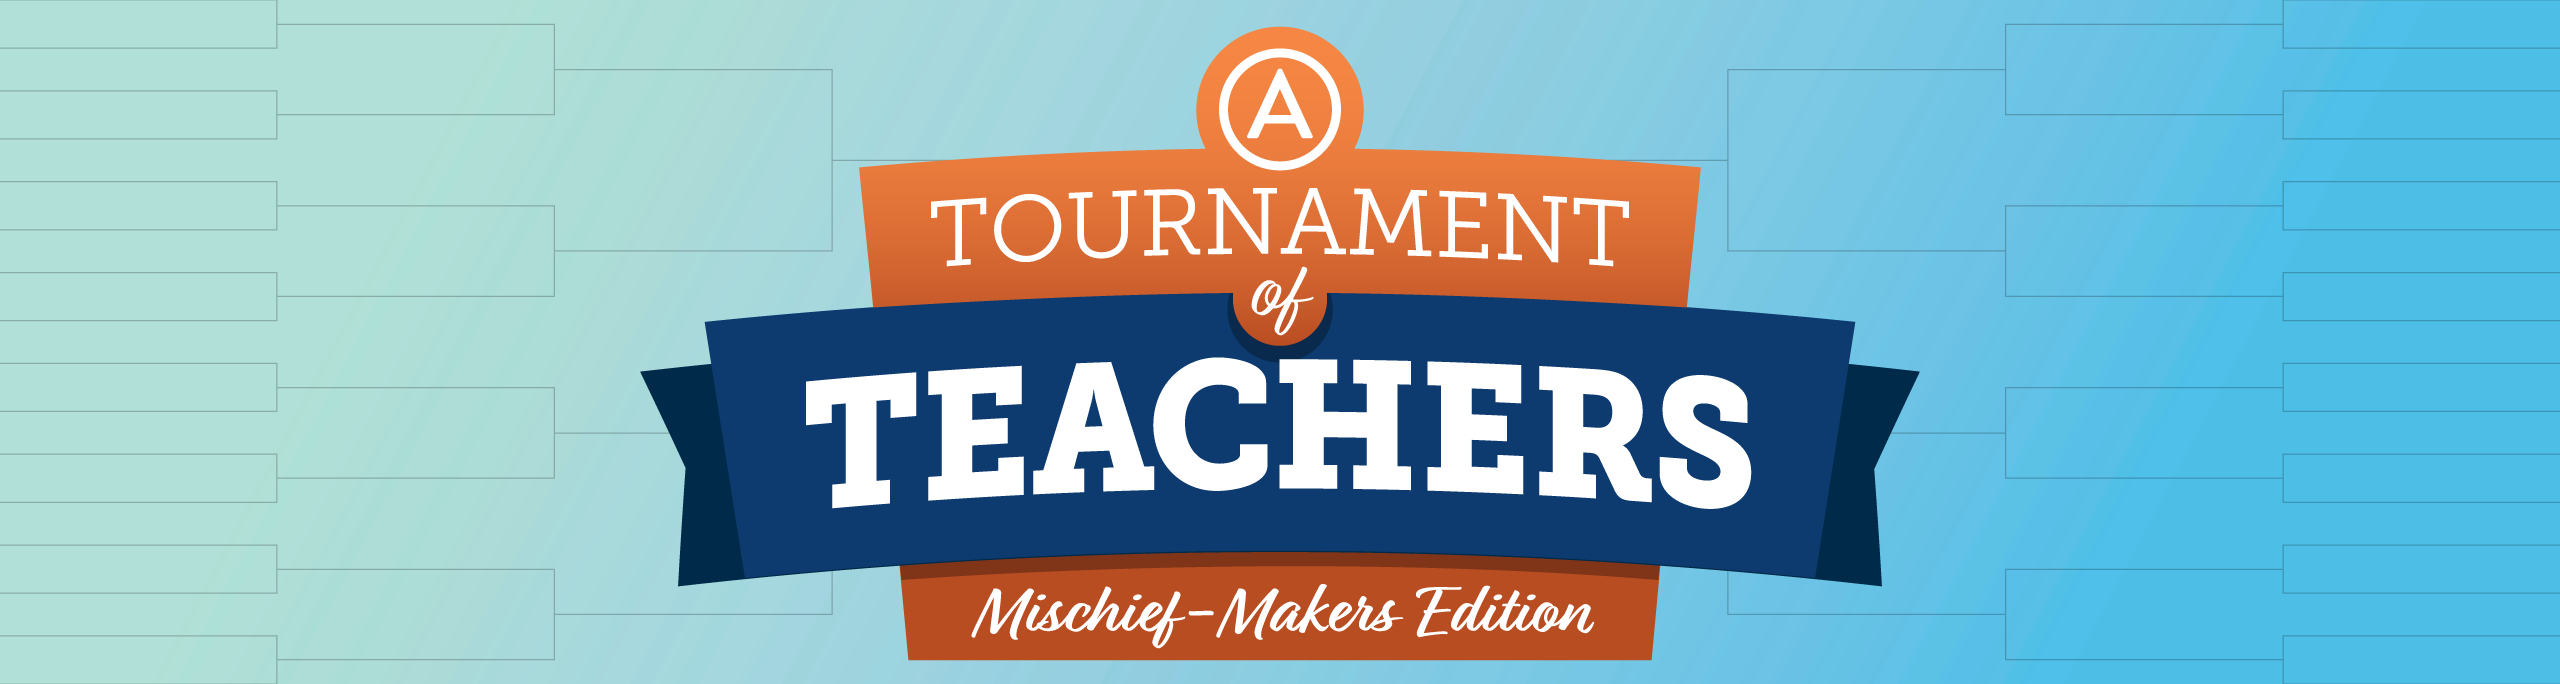 Advancement Courses' Tournament of Teachers